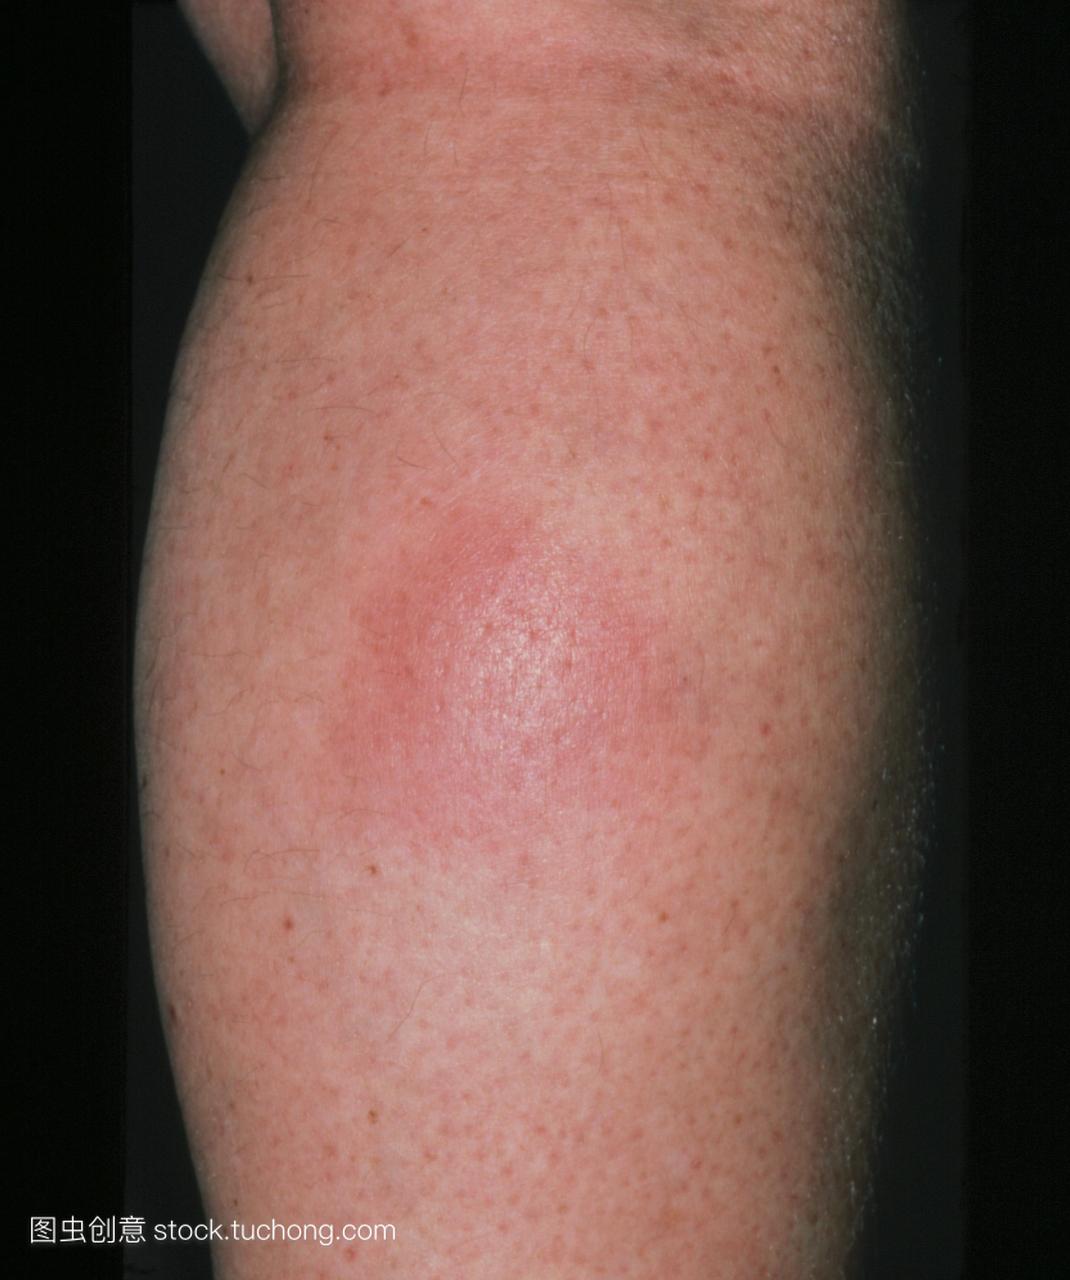 小腿结节性红斑。这种情况的特点是一个红色的